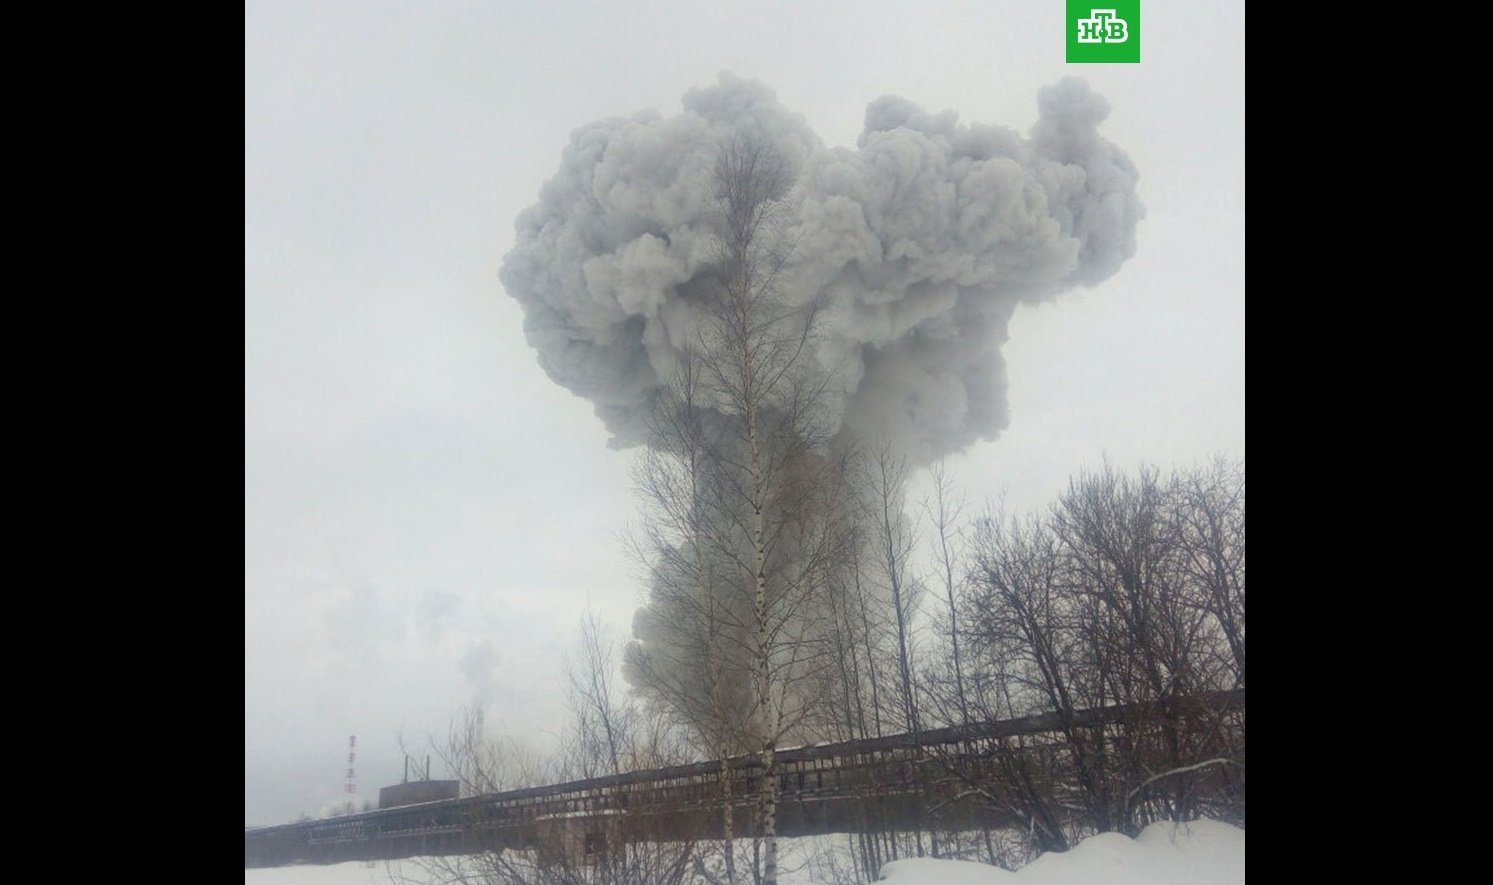 Под Петербургом мощнейший взрыв на химзаводе: видео огромного столба дыма, в соцсетях паника